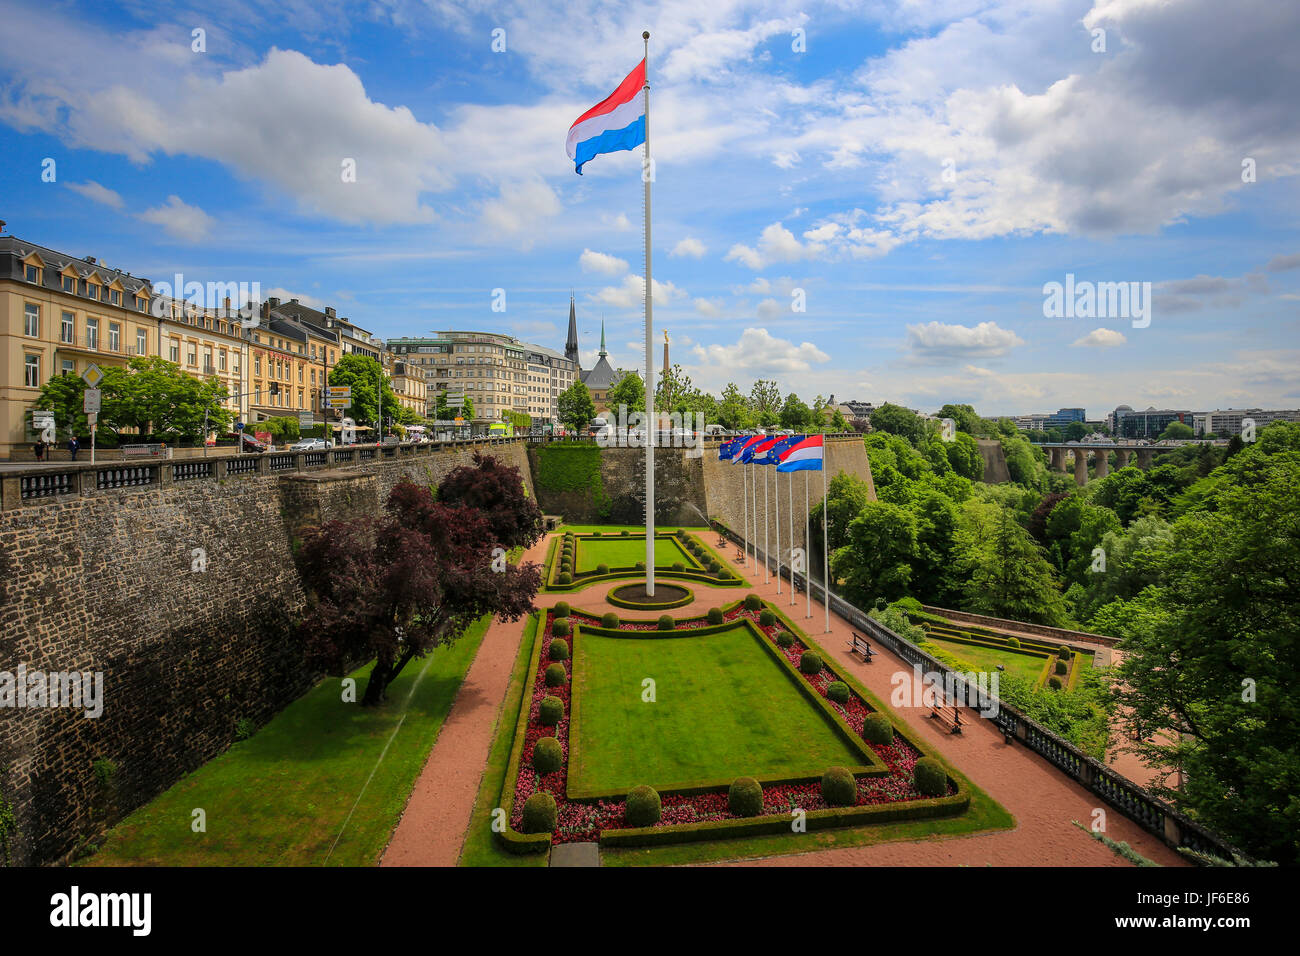 La bandera nacional de Luxemburgo en el parque en la plaza de la Constitución, la ciudad de Luxemburgo, Gran Ducado de Luxemburgo, Europa Luxemburger Nationalflagge i Foto de stock